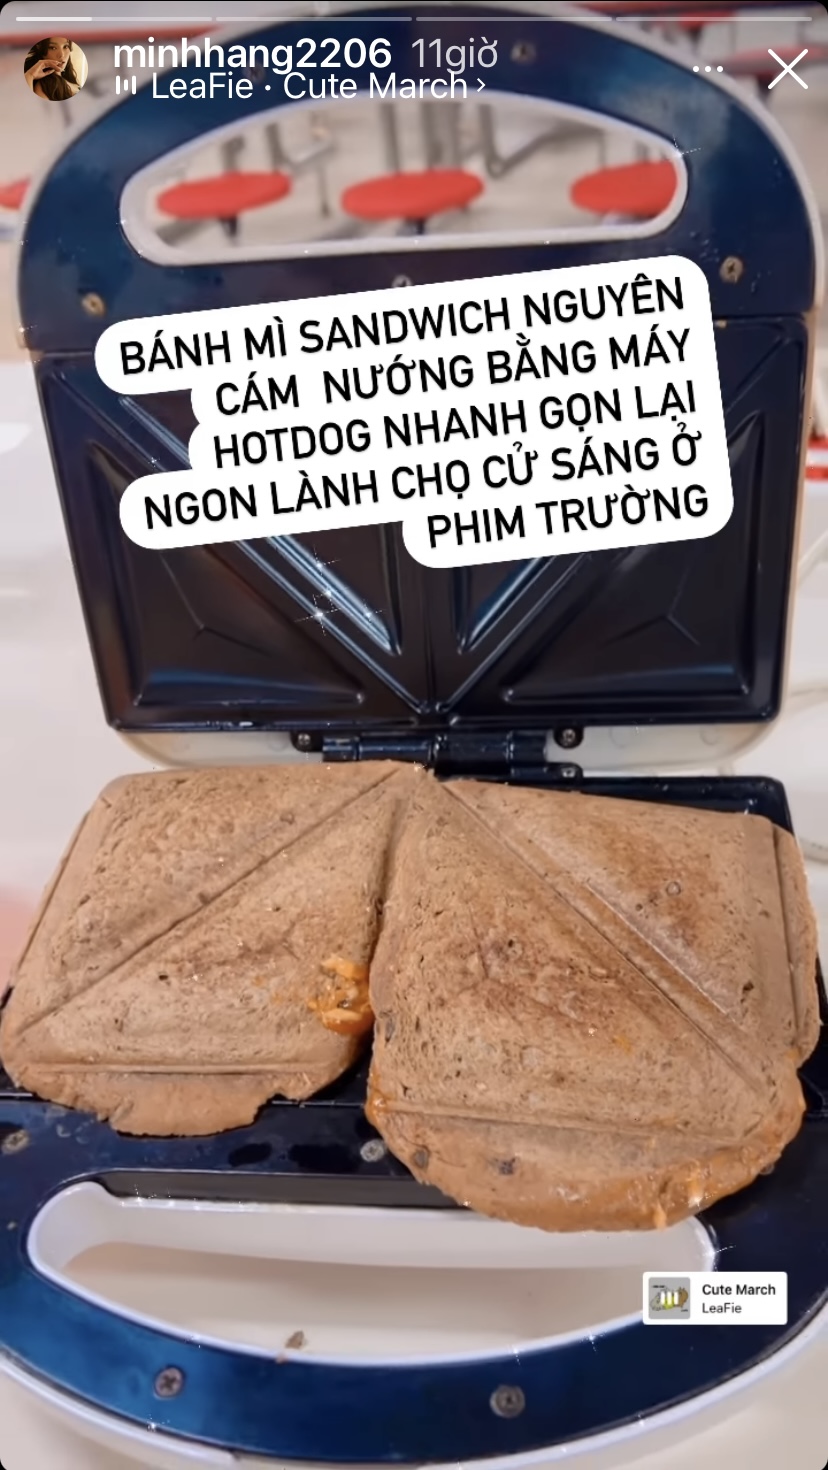 Sử dụng một chiếc máy làm bánh để chuẩn bị món bánh mì sandwich nguyên cám cho bữa sáng tại trường quay là bí quyết để Minh Hằng có thể ăn nhanh gọn mà vẫn ngon miệng.